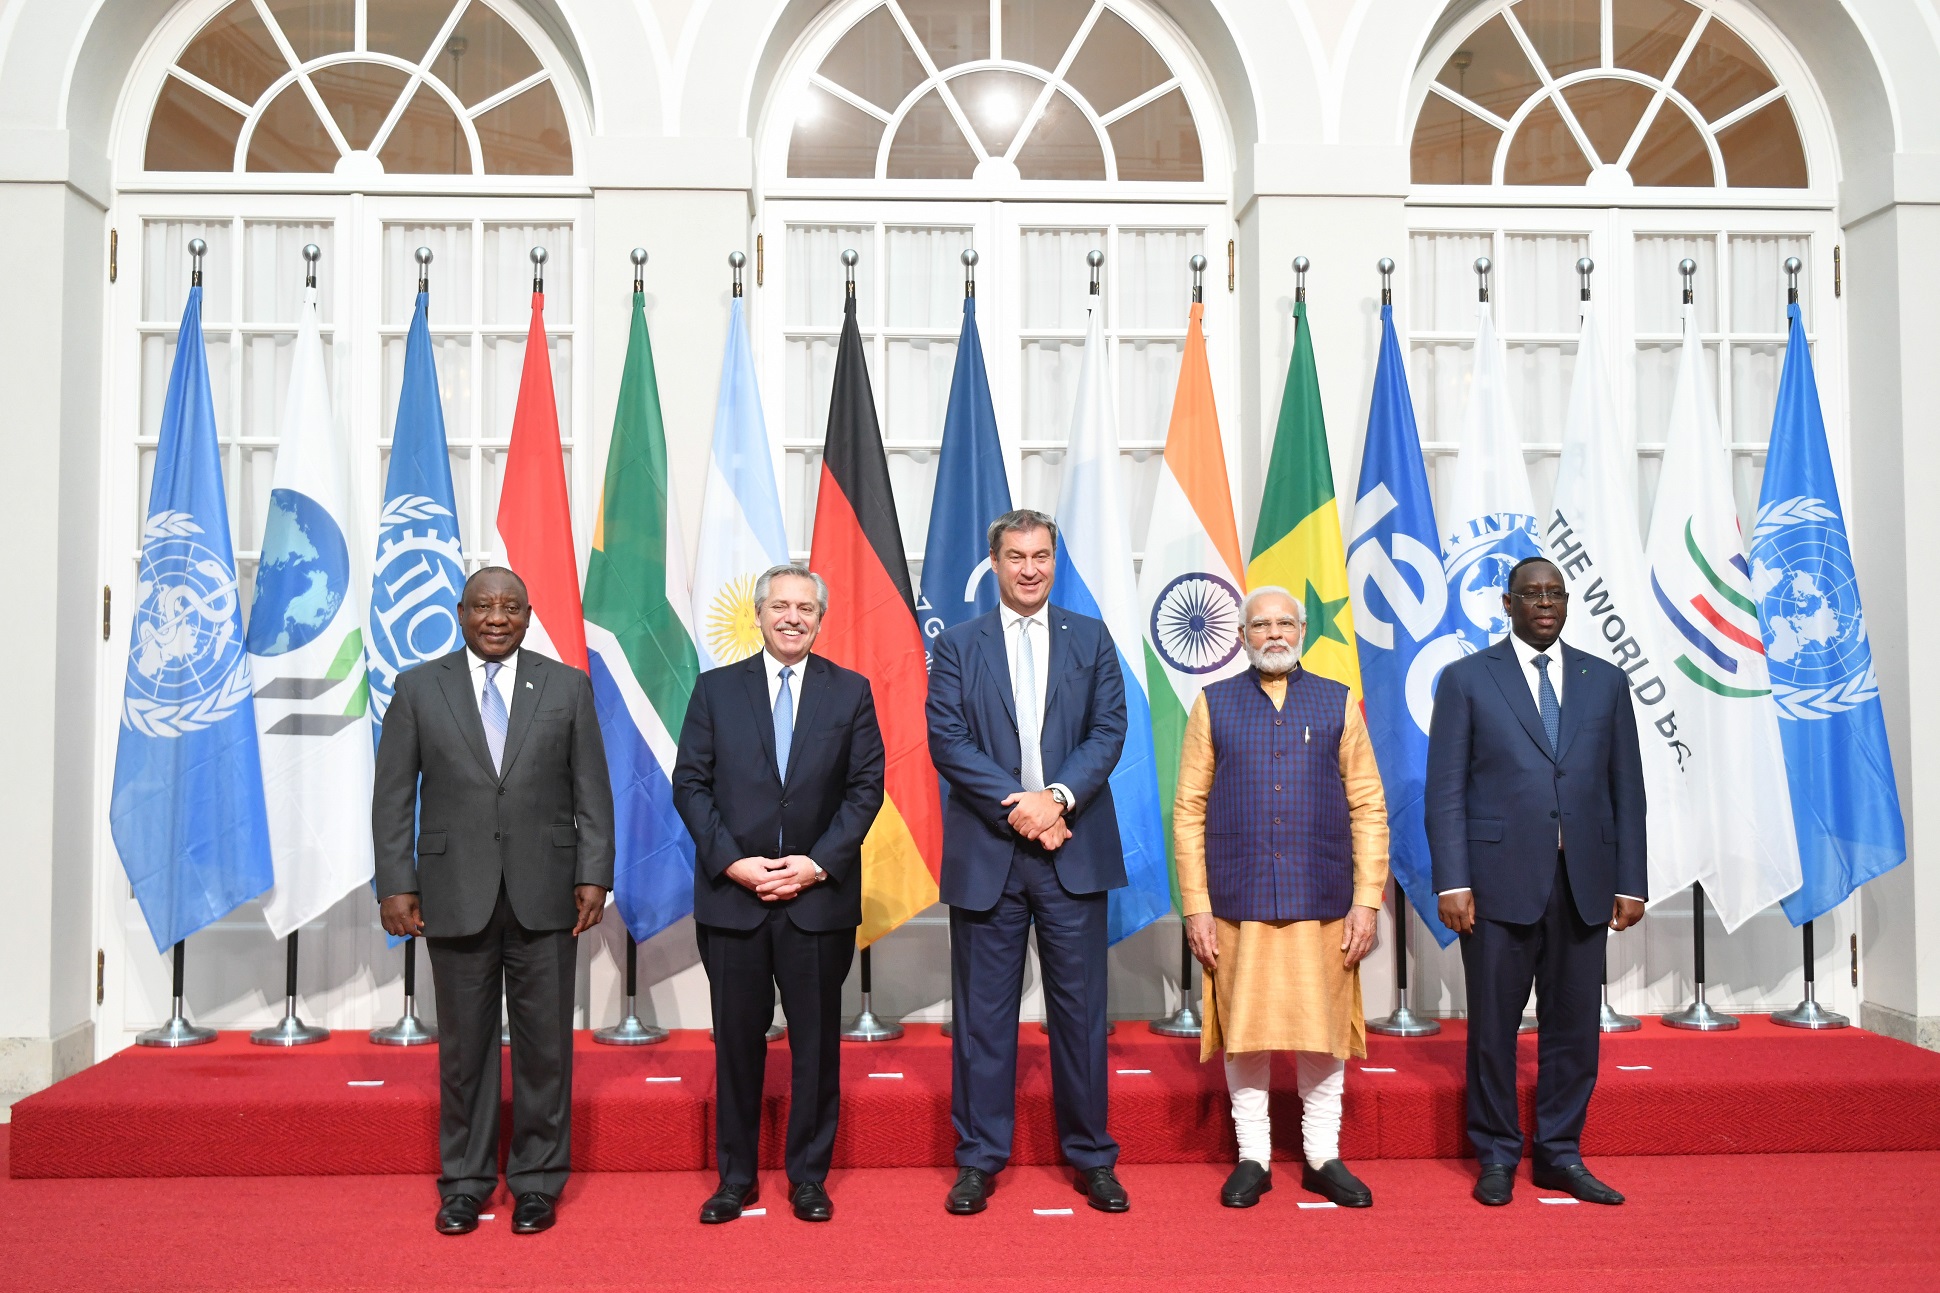 El presidente participó de la actividad de bienvenida a los países invitados al G-7